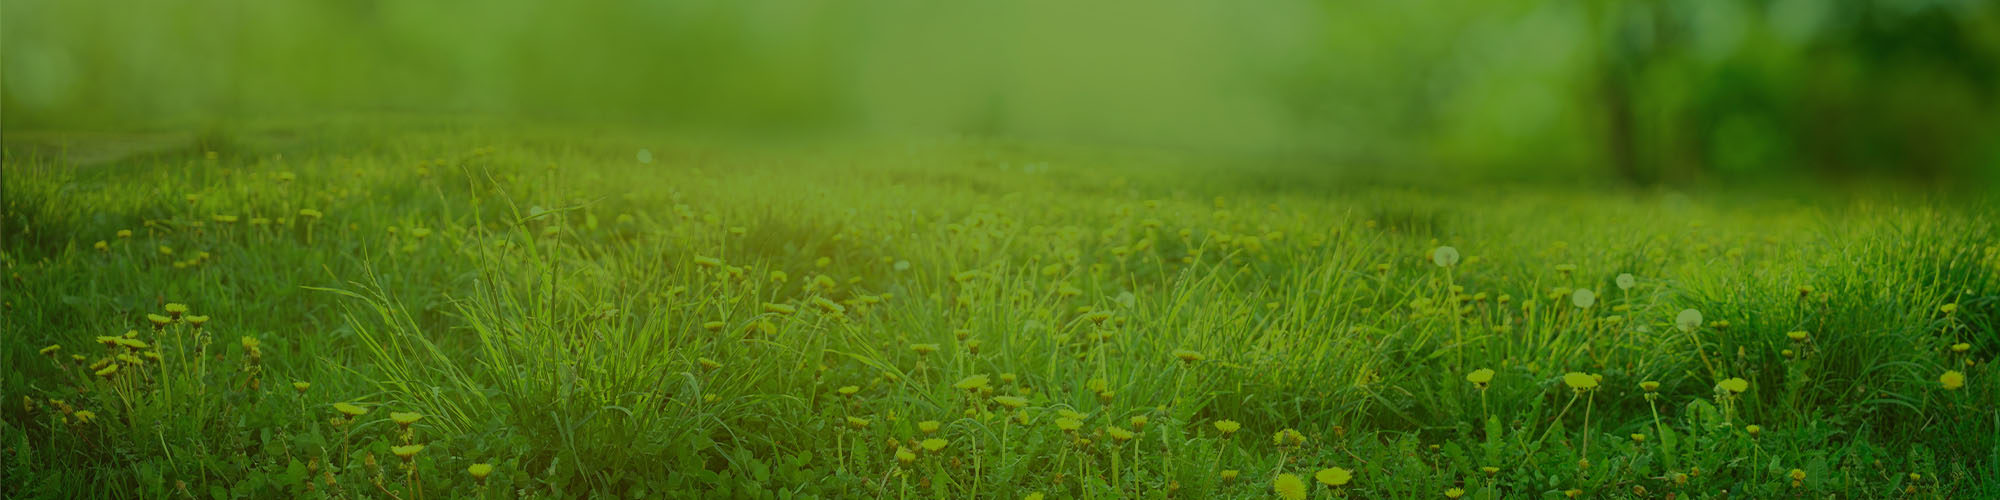 A field of grass.